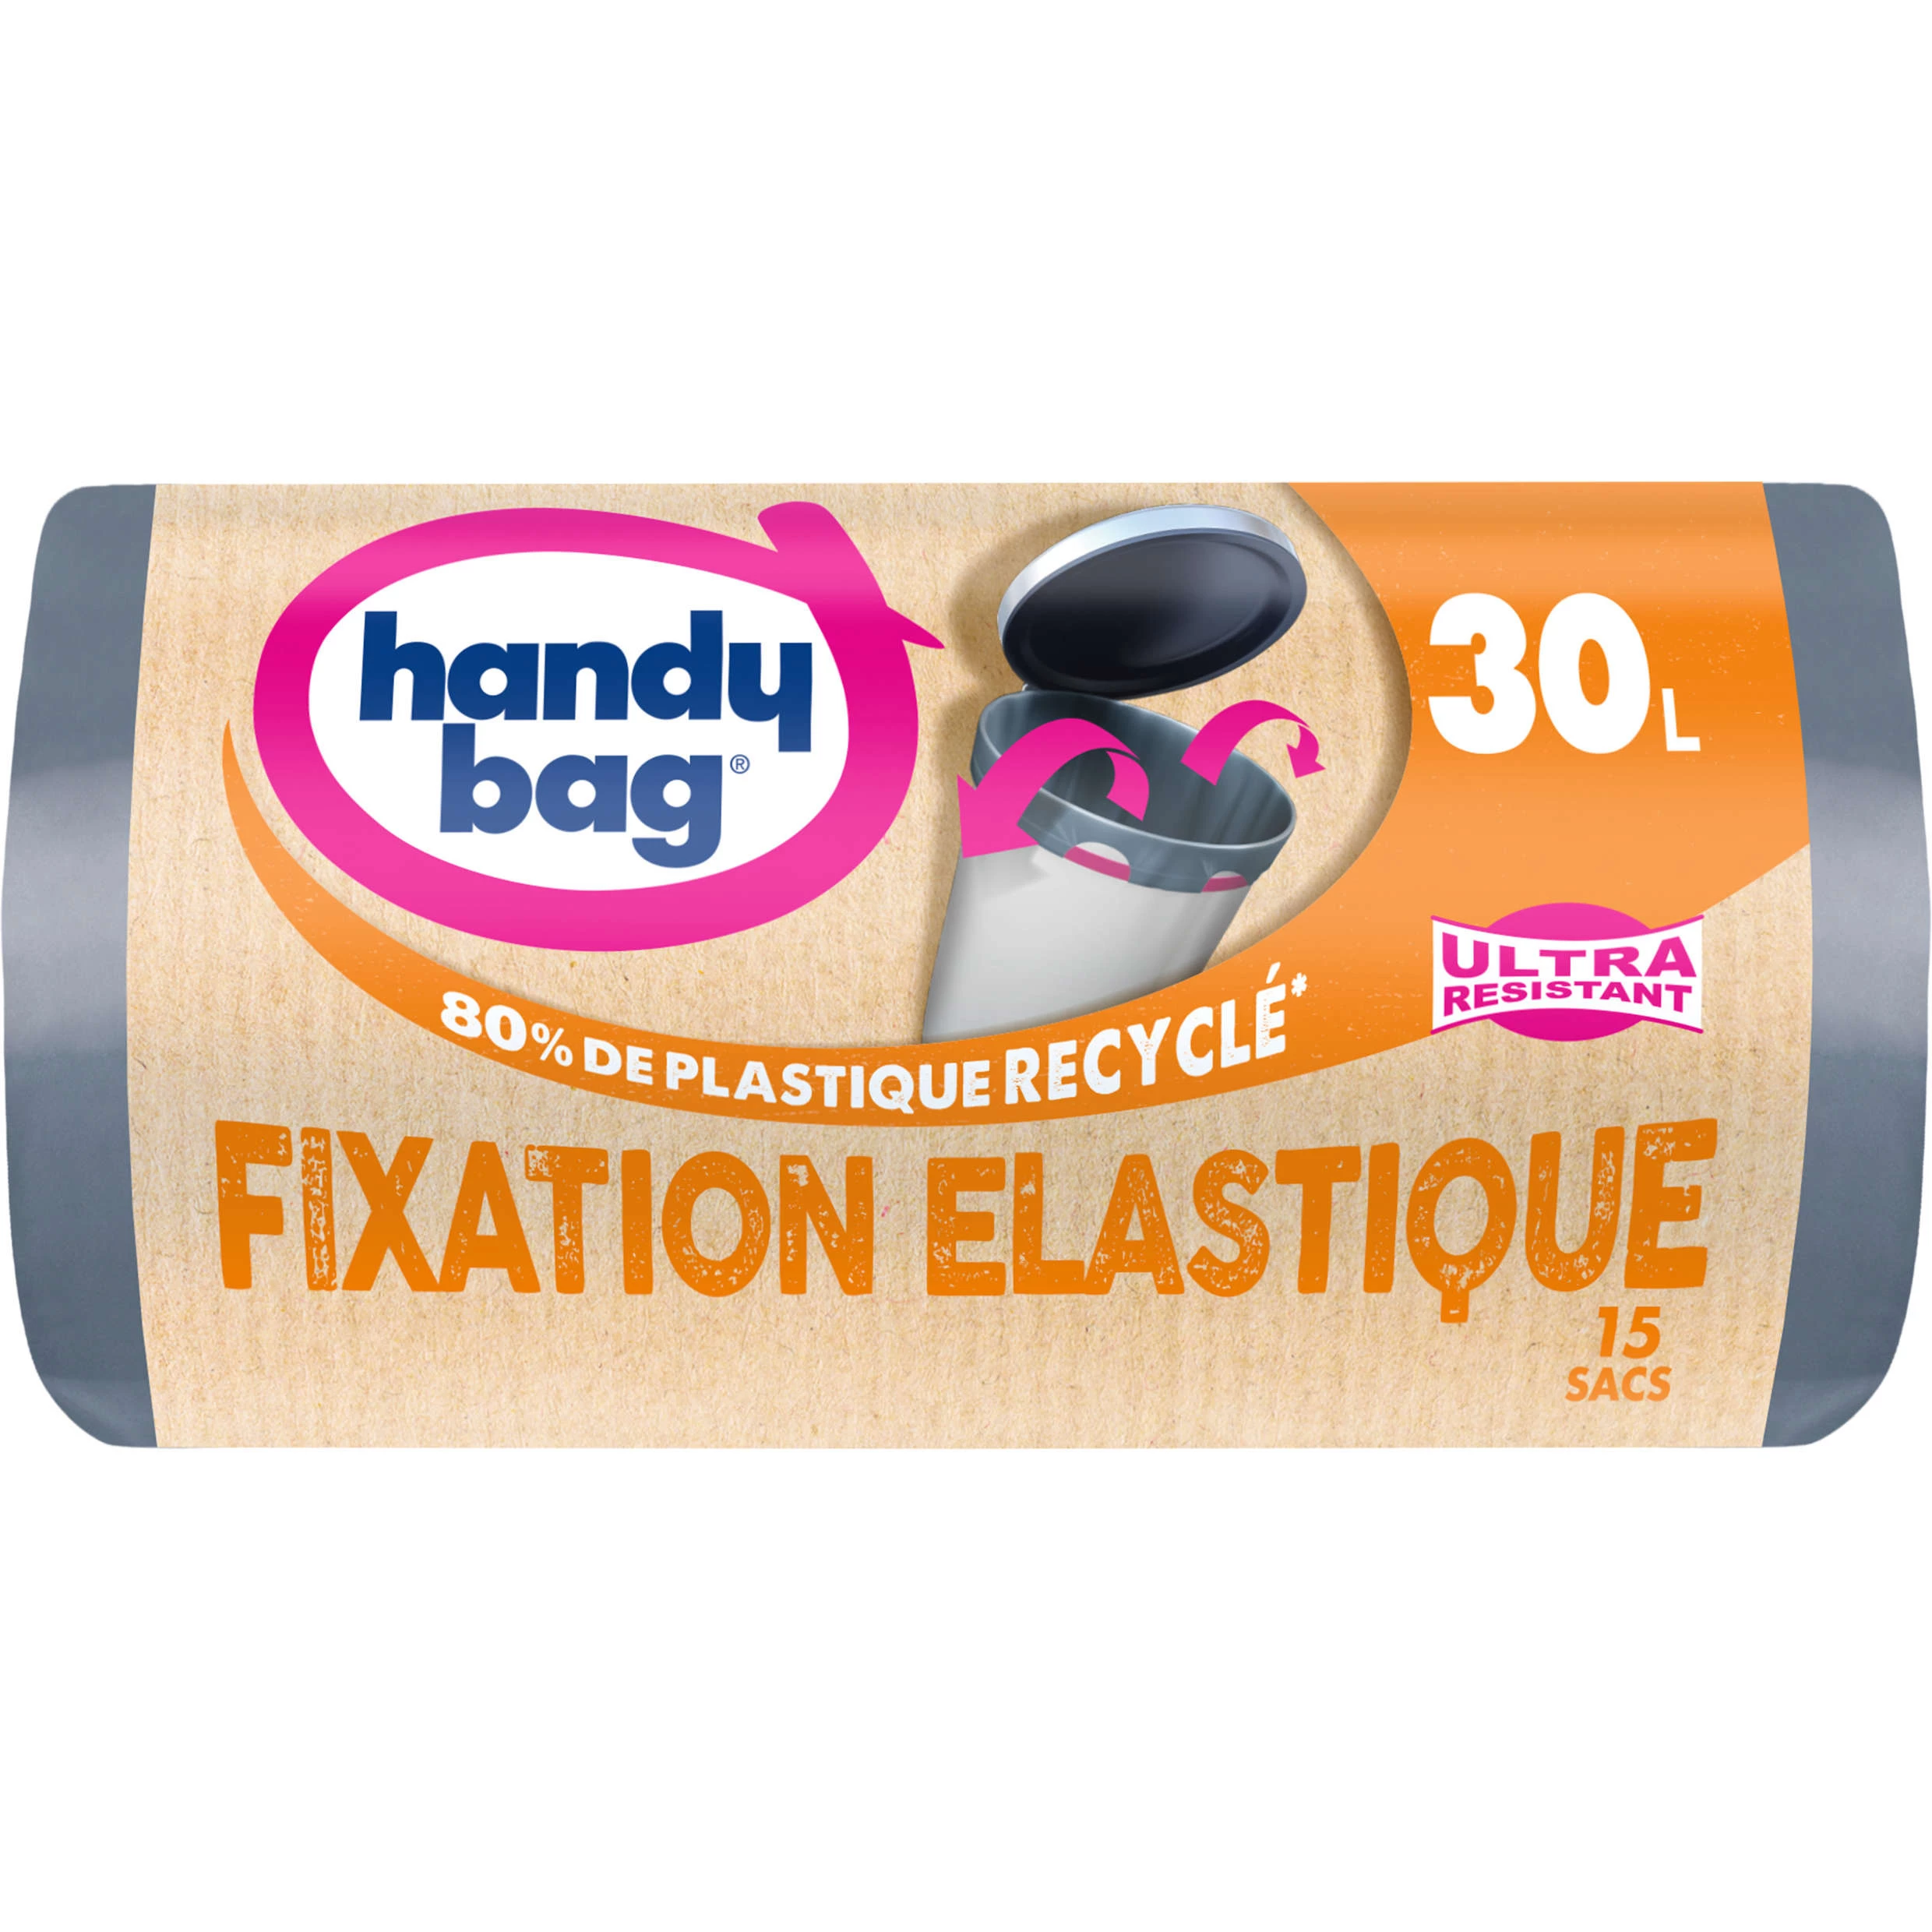 Sac poubelle ultra résistant fixation elastique X15 30L - HANDY BAG